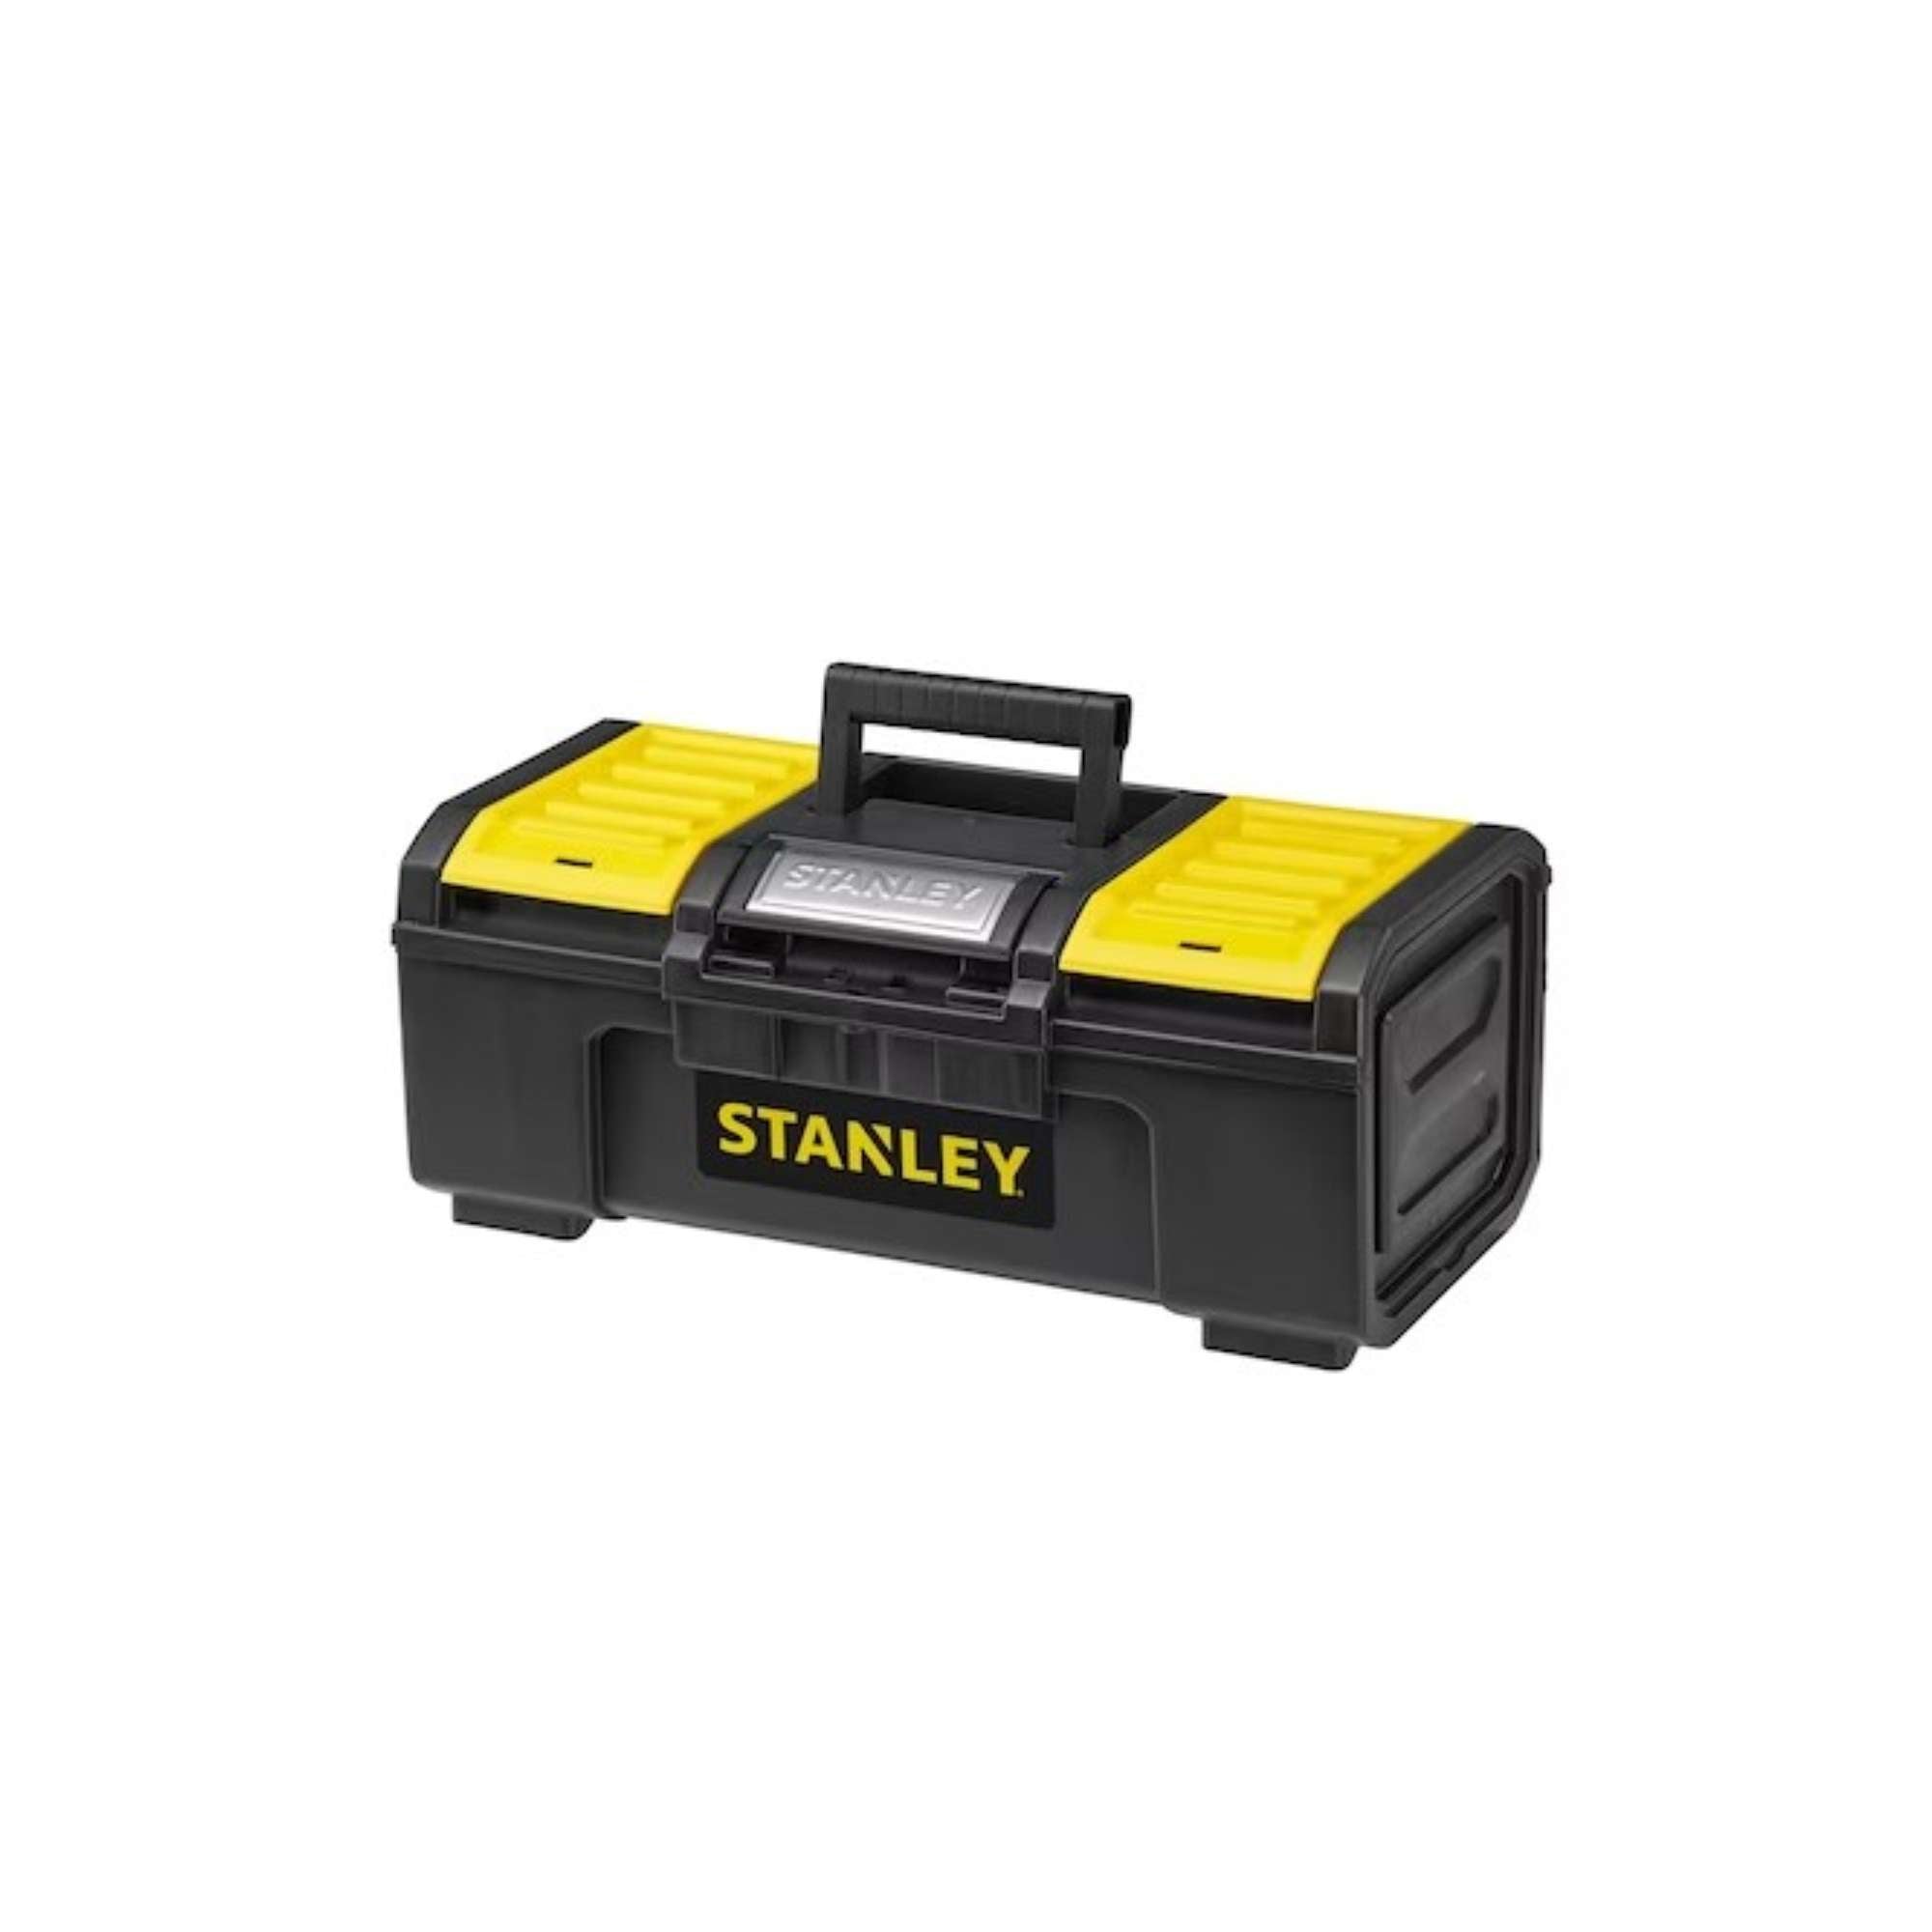 Cassetta degli attrezzi con sistema di chiusura/apertura a una mano - Stanley